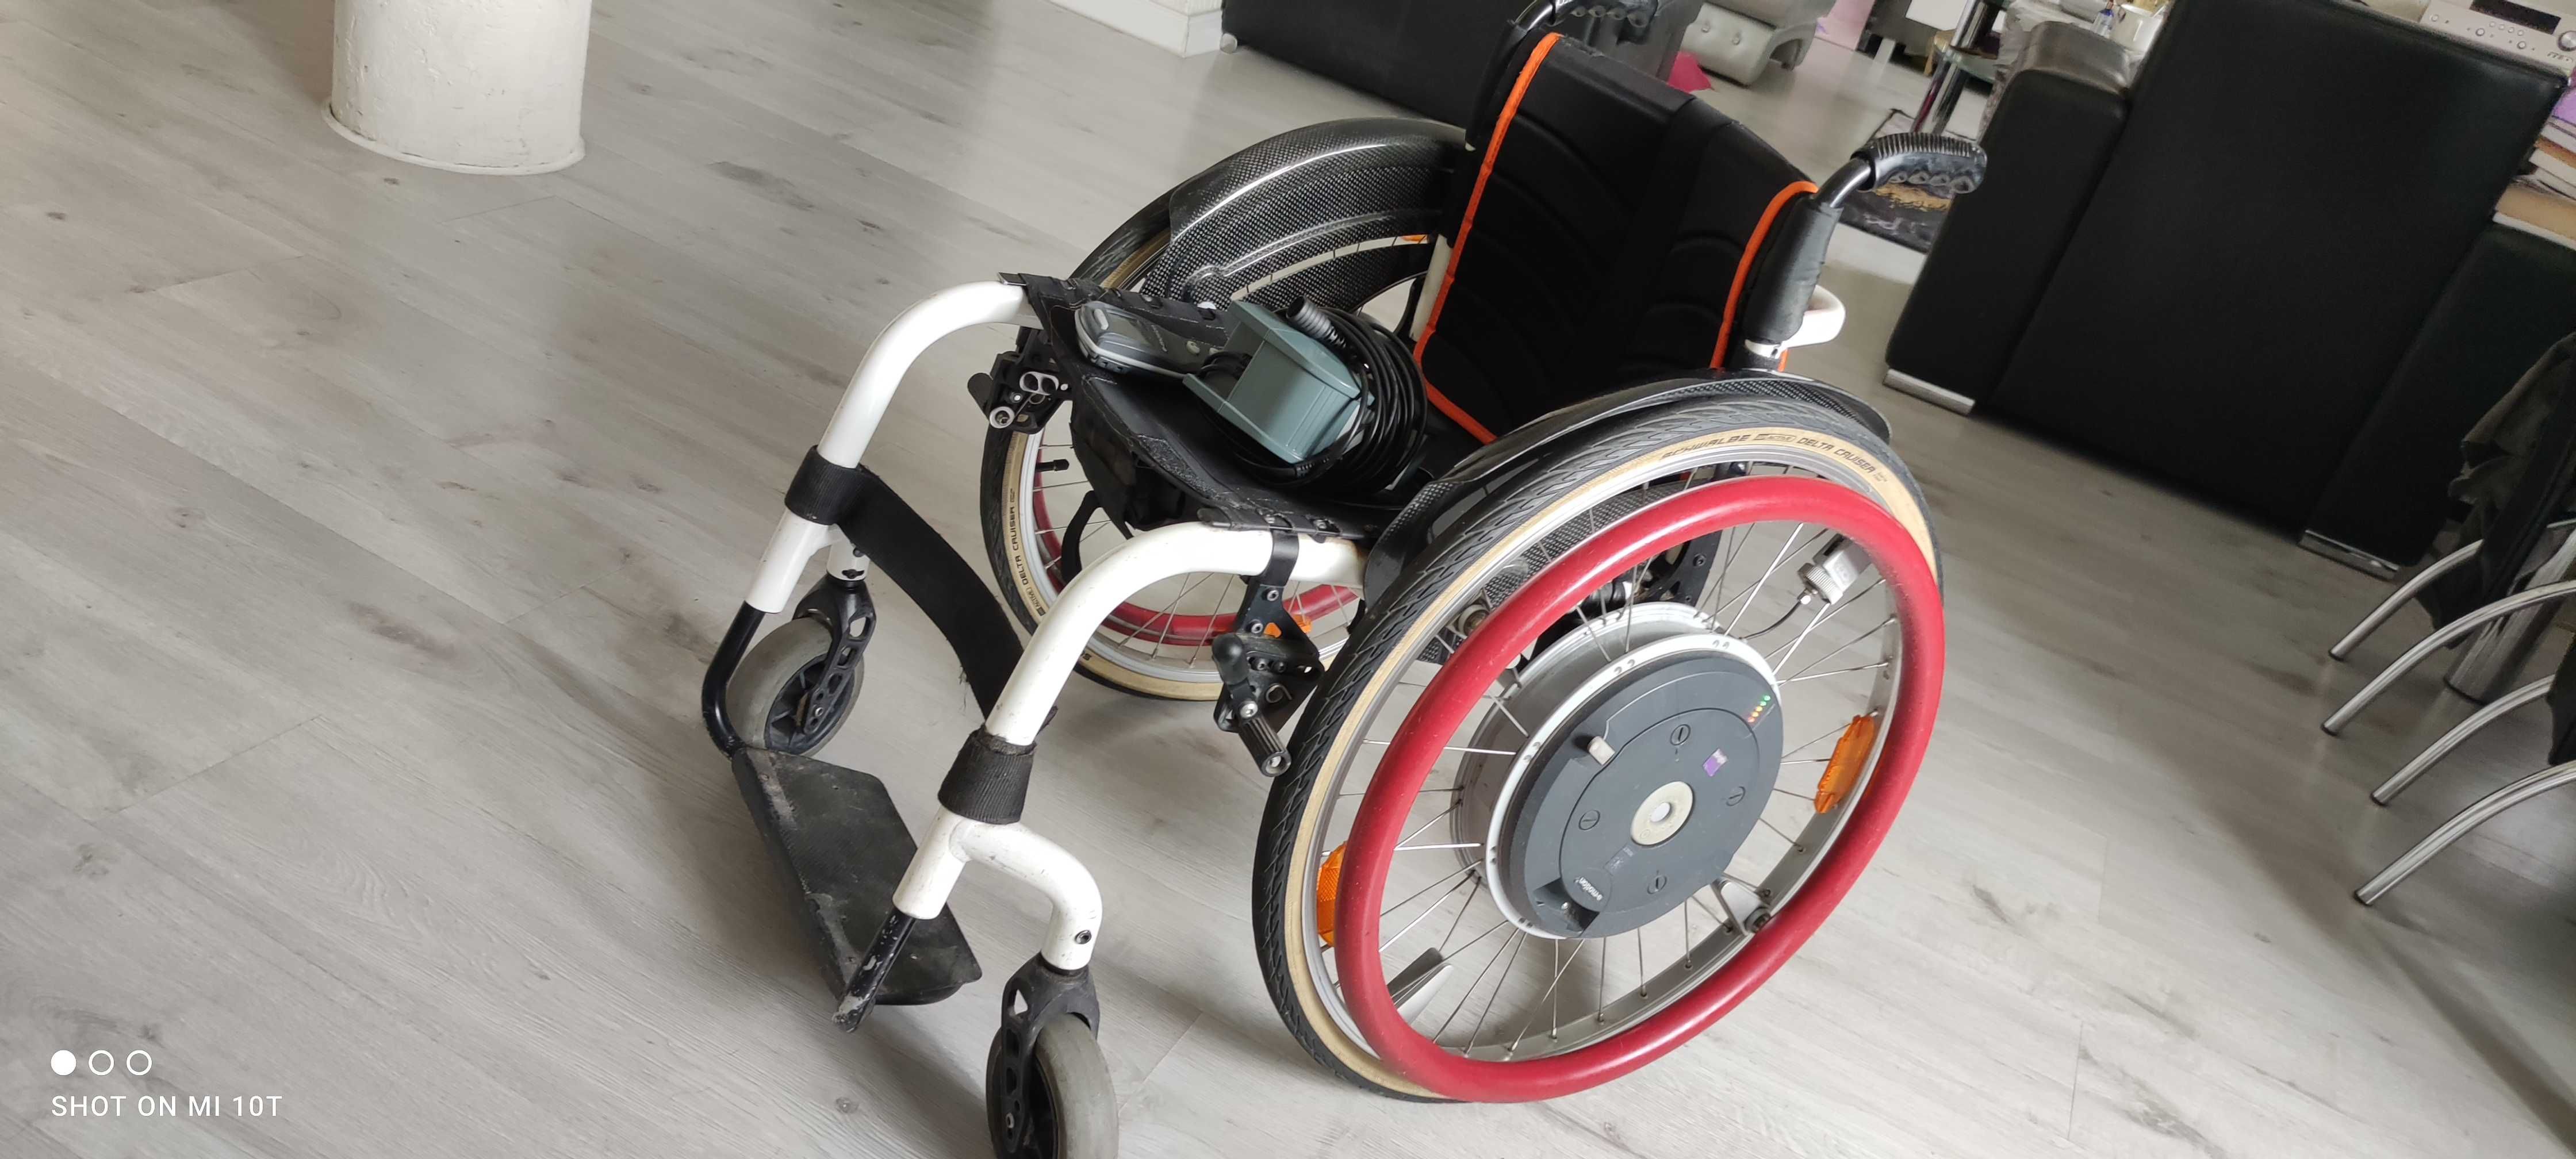 Wózek inwalidzki Aktywny Helium +koła Alber e-motion